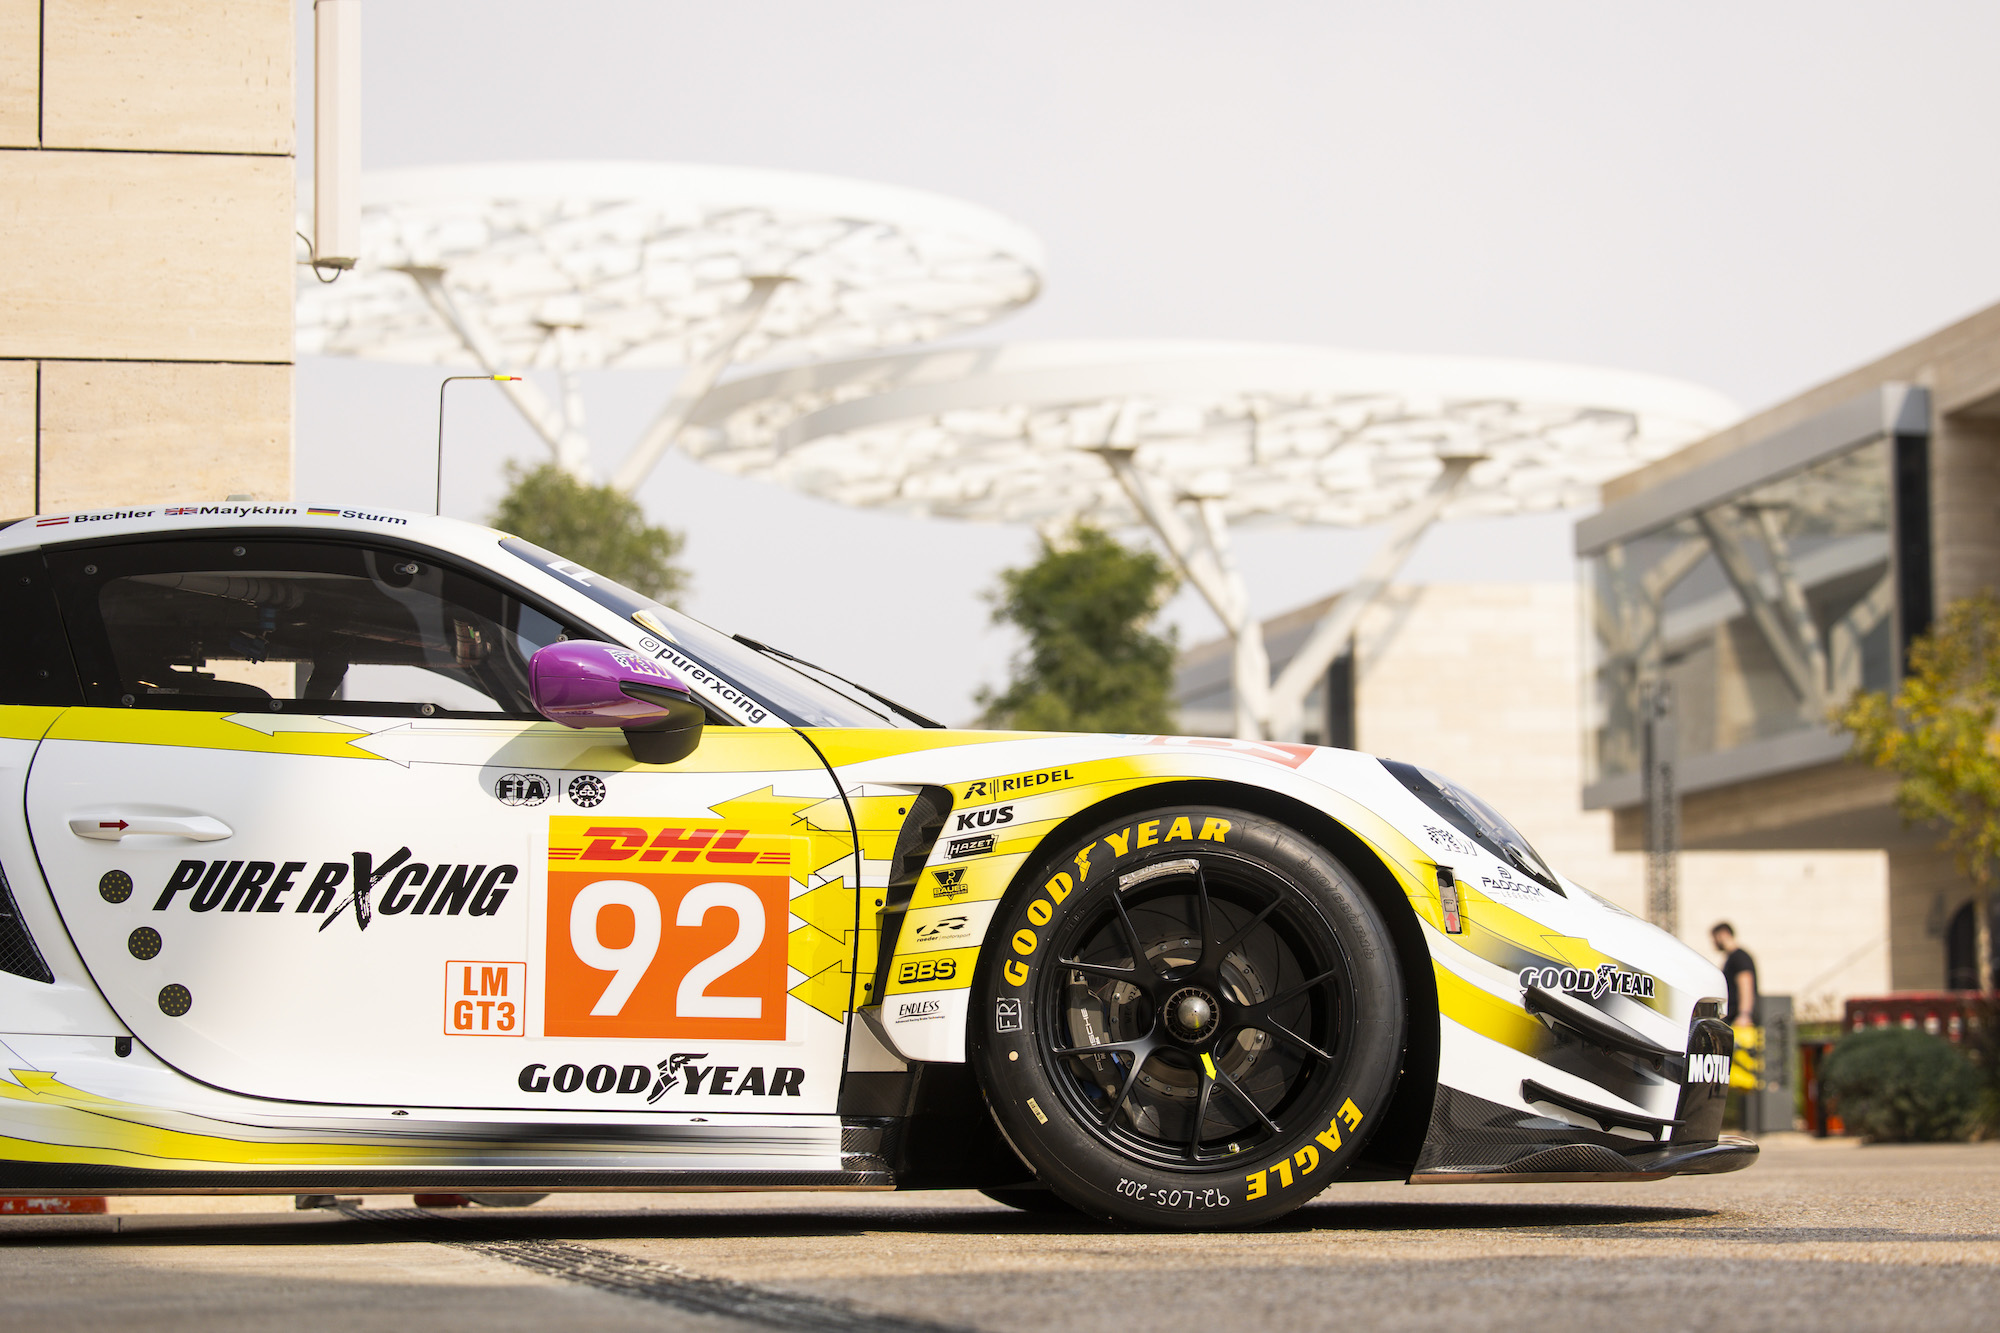 Alex Malykhin Joel Sturm Klaus Bachler Pure Rxcing Porsche 911 GT3 R FIA WEC Losail